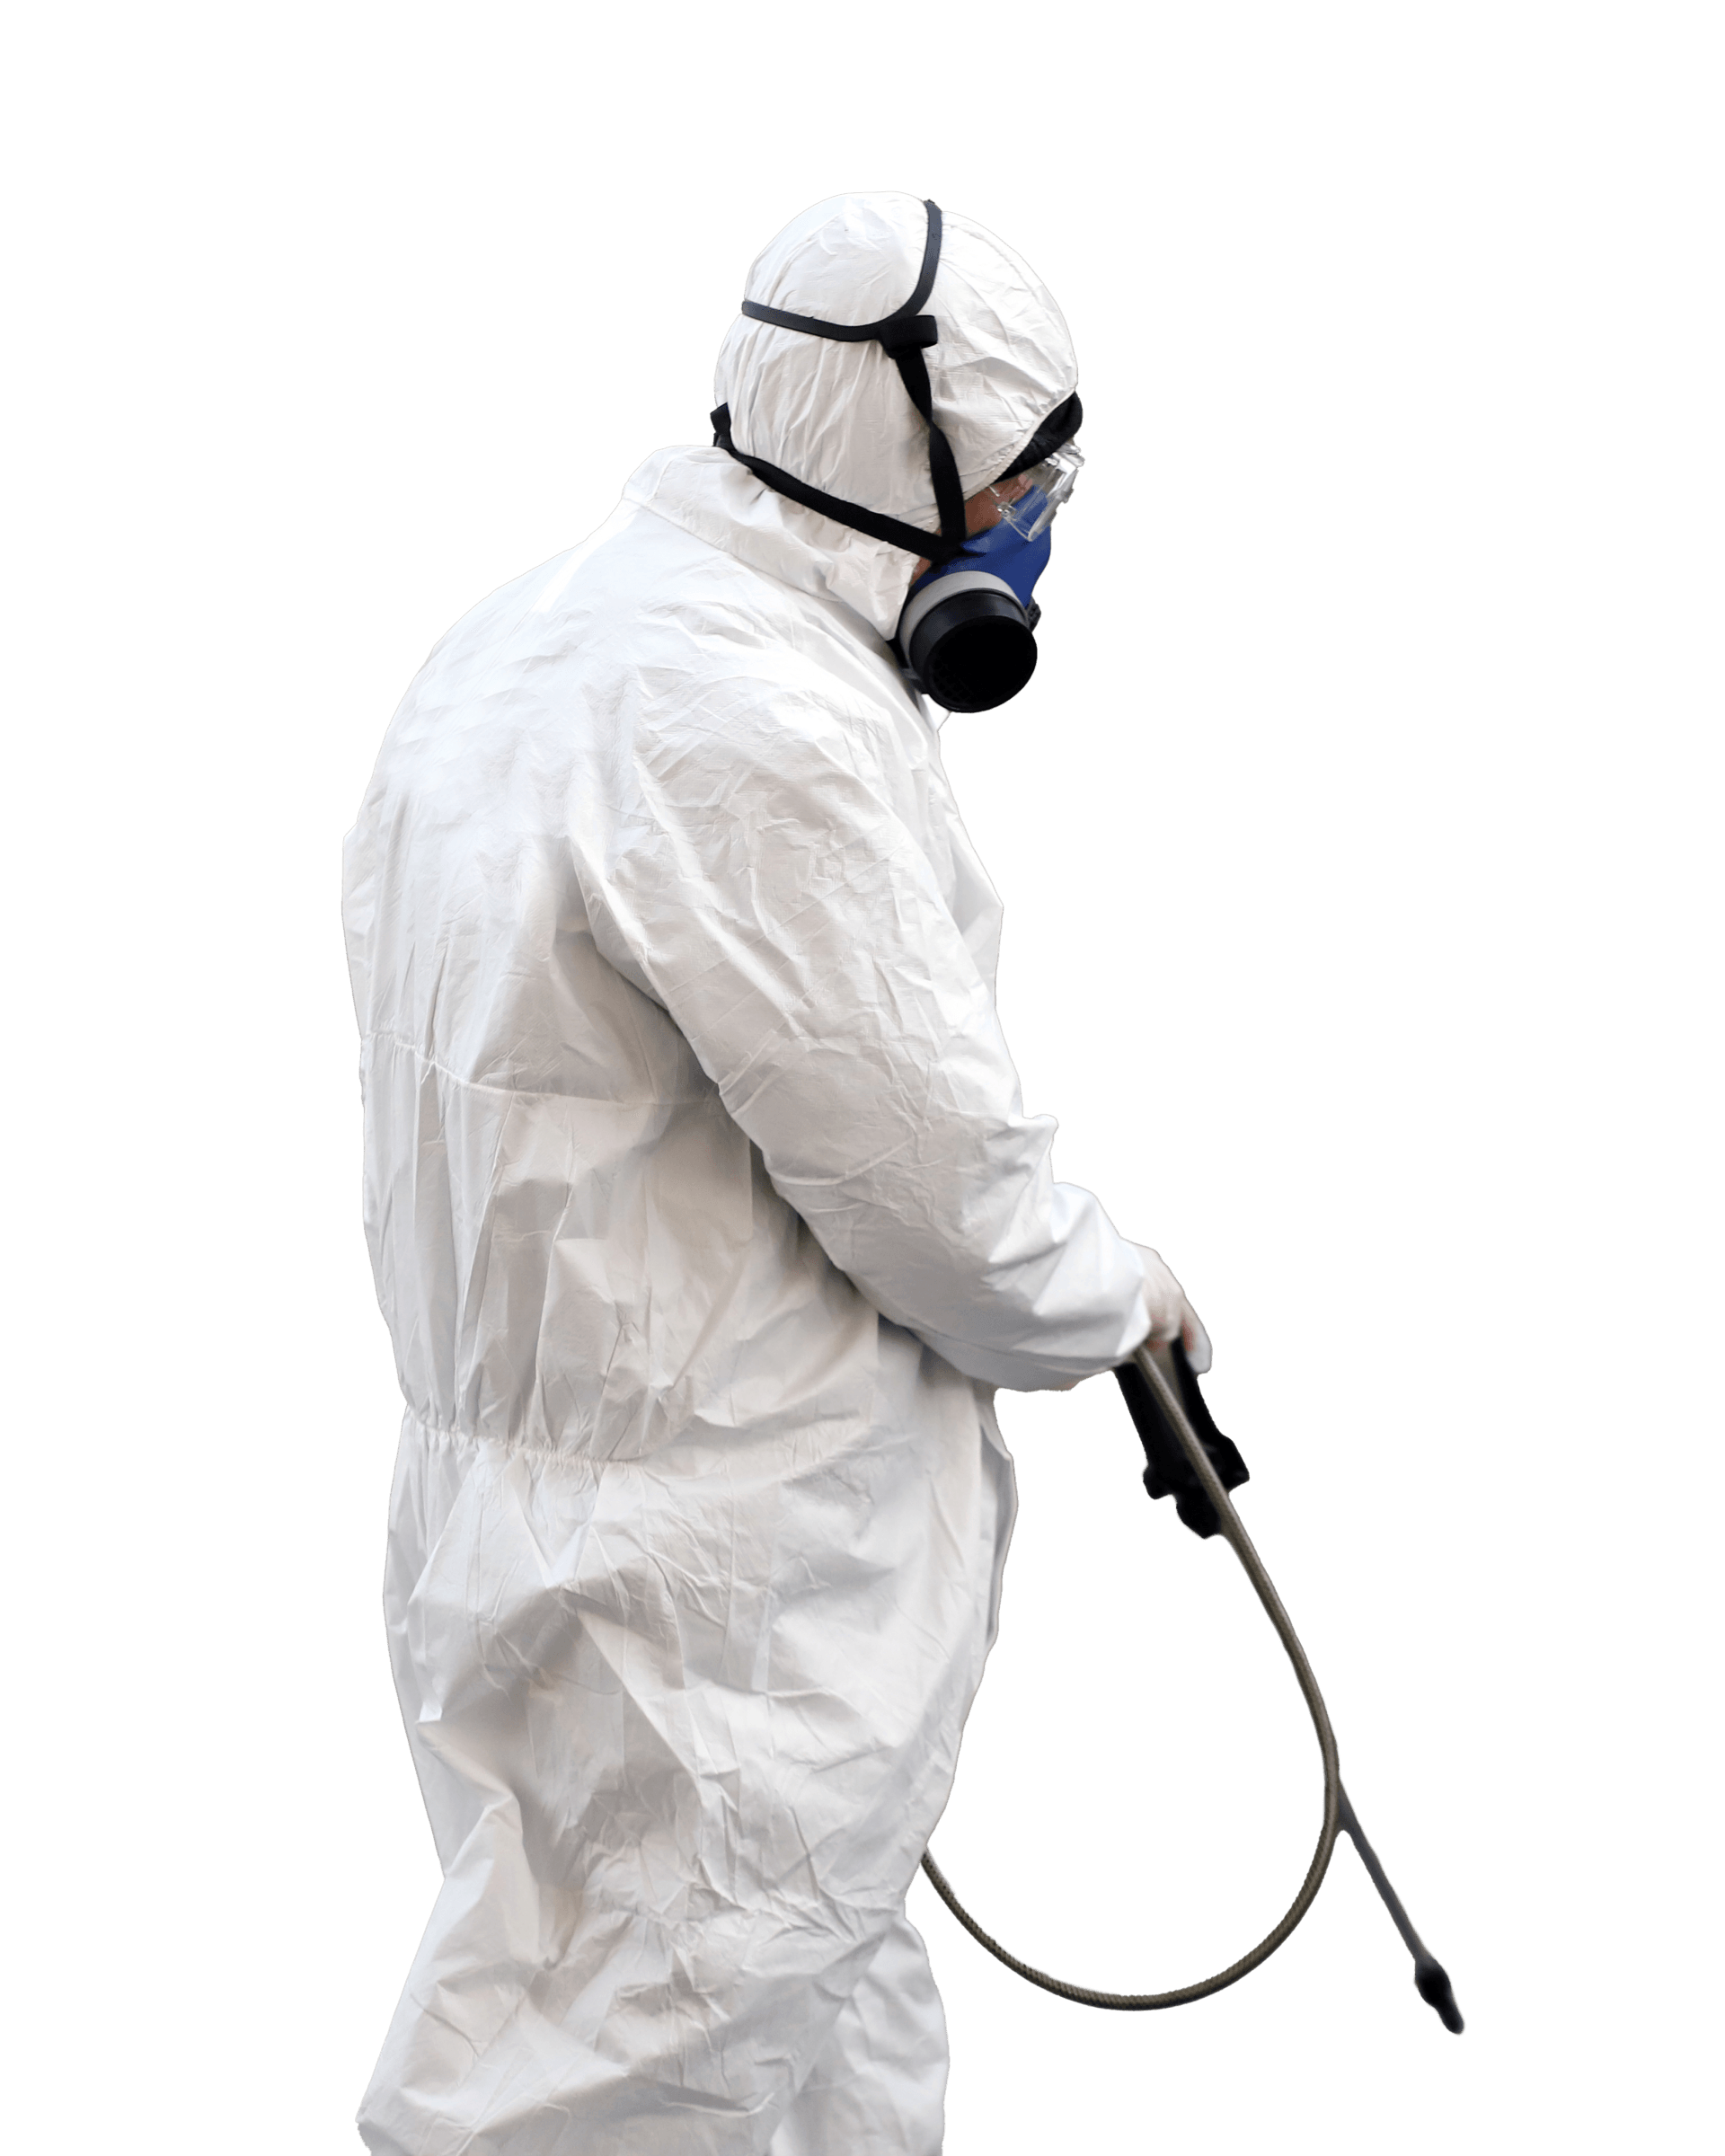 Un homme portant une combinaison de protection et un masque pulvérise quelque chose avec un pulvérisateur.